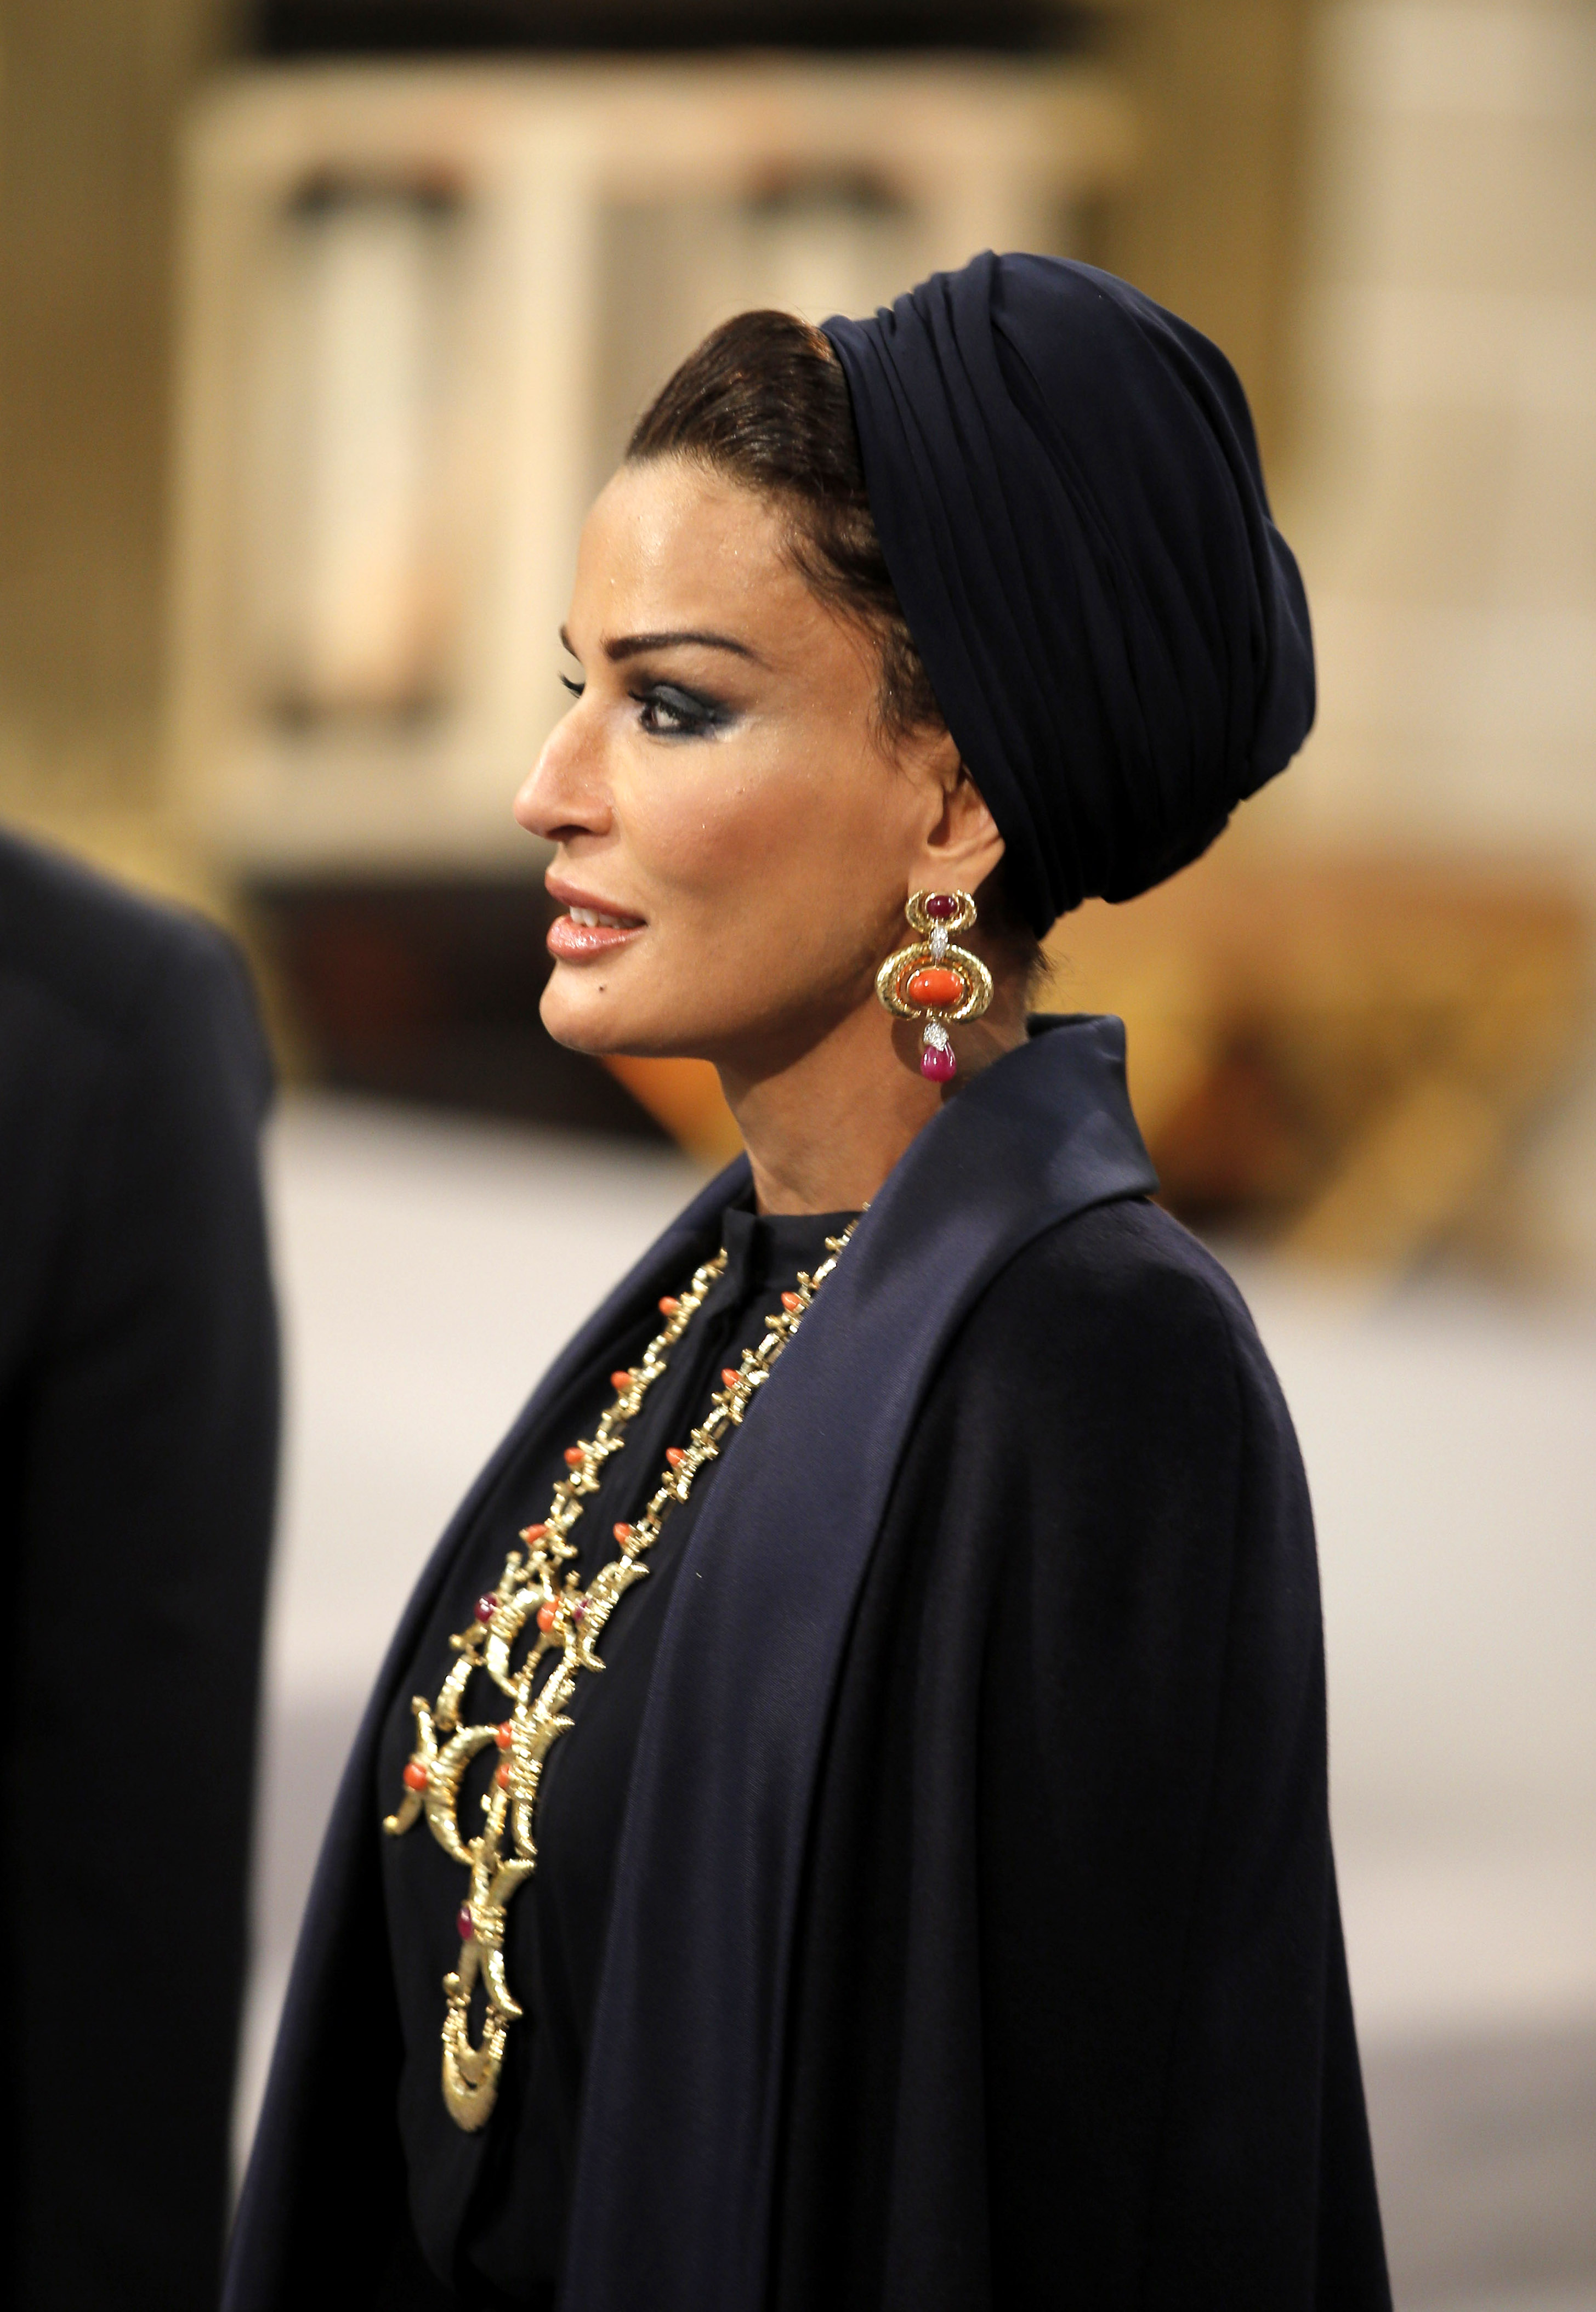 Тя се различава по много неща от останалите жени в страната ѝ - Катар. Облича панталони и рокли, подчертаващи формите ѝ, носи само тюрбан, има американско образование, а нейната дума се чува както в дома ѝ, така и във власта. Името ѝ е Моза бин Насер ал Миснед, втората съпруга на бившия емир на Катар шейх Хамад бин Калифа ал Тани (1995-2013 г.). На 18 г. шейха Моза загърбва плановете за брак с бъдещия емир, за да завърши образованието си по психология, а след това заминава да учи в Щатите. Връщайки се оттам, Моза е готова да се отдаде на семейството.